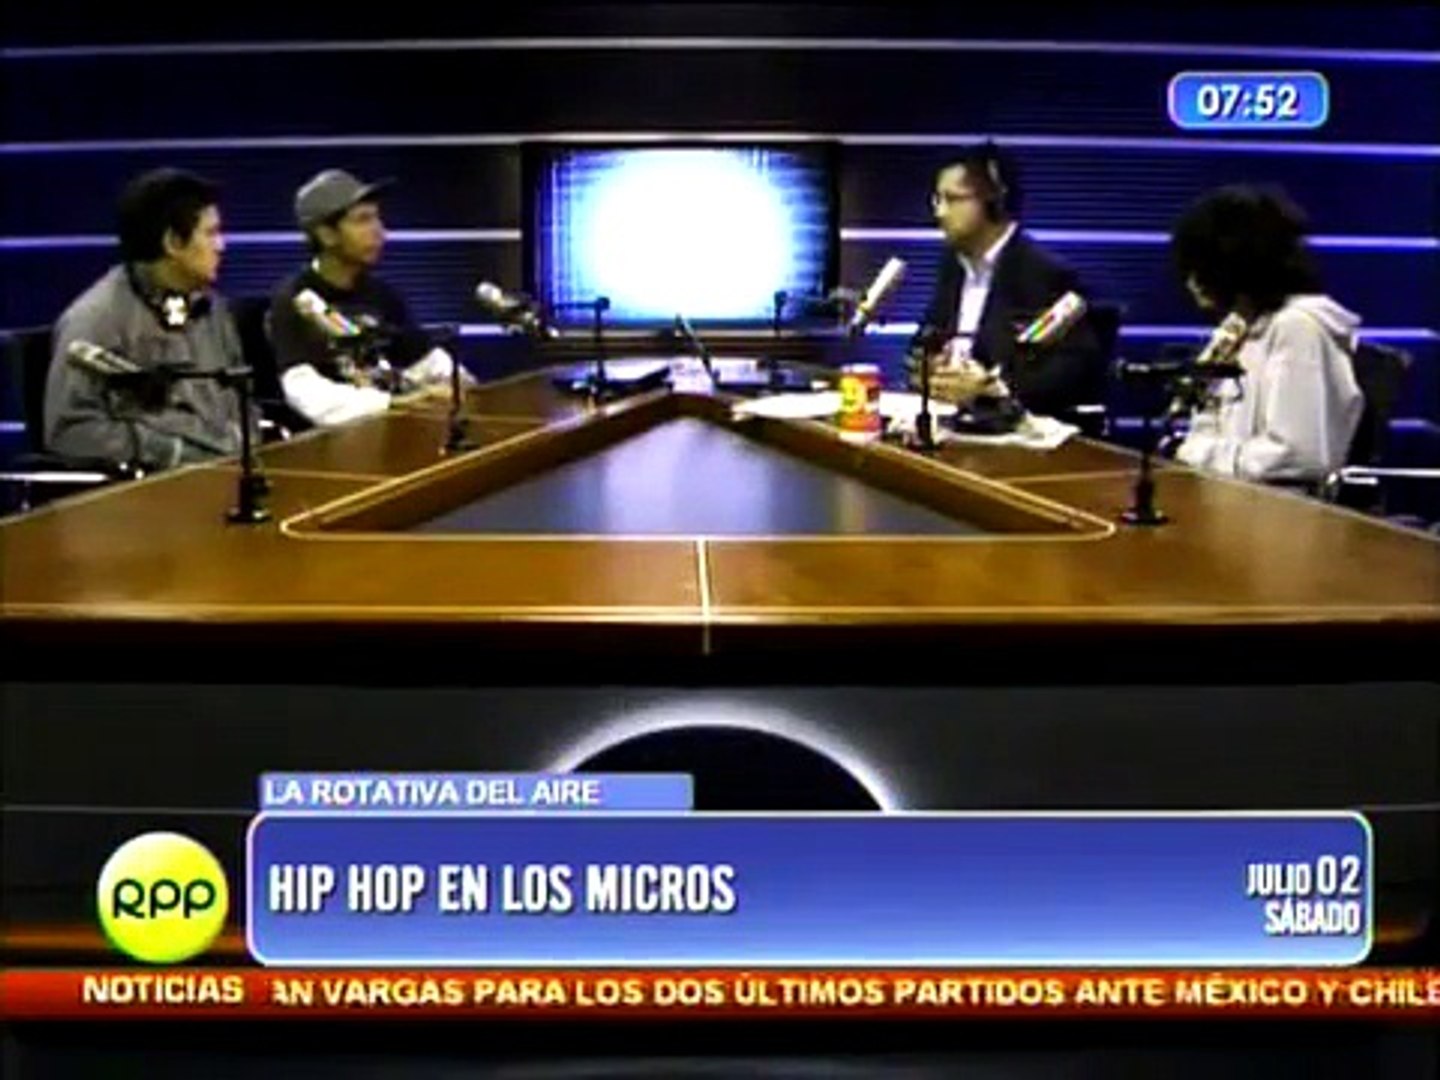 hip hop de los micros - gasper - plk - goyo en rpp noticias